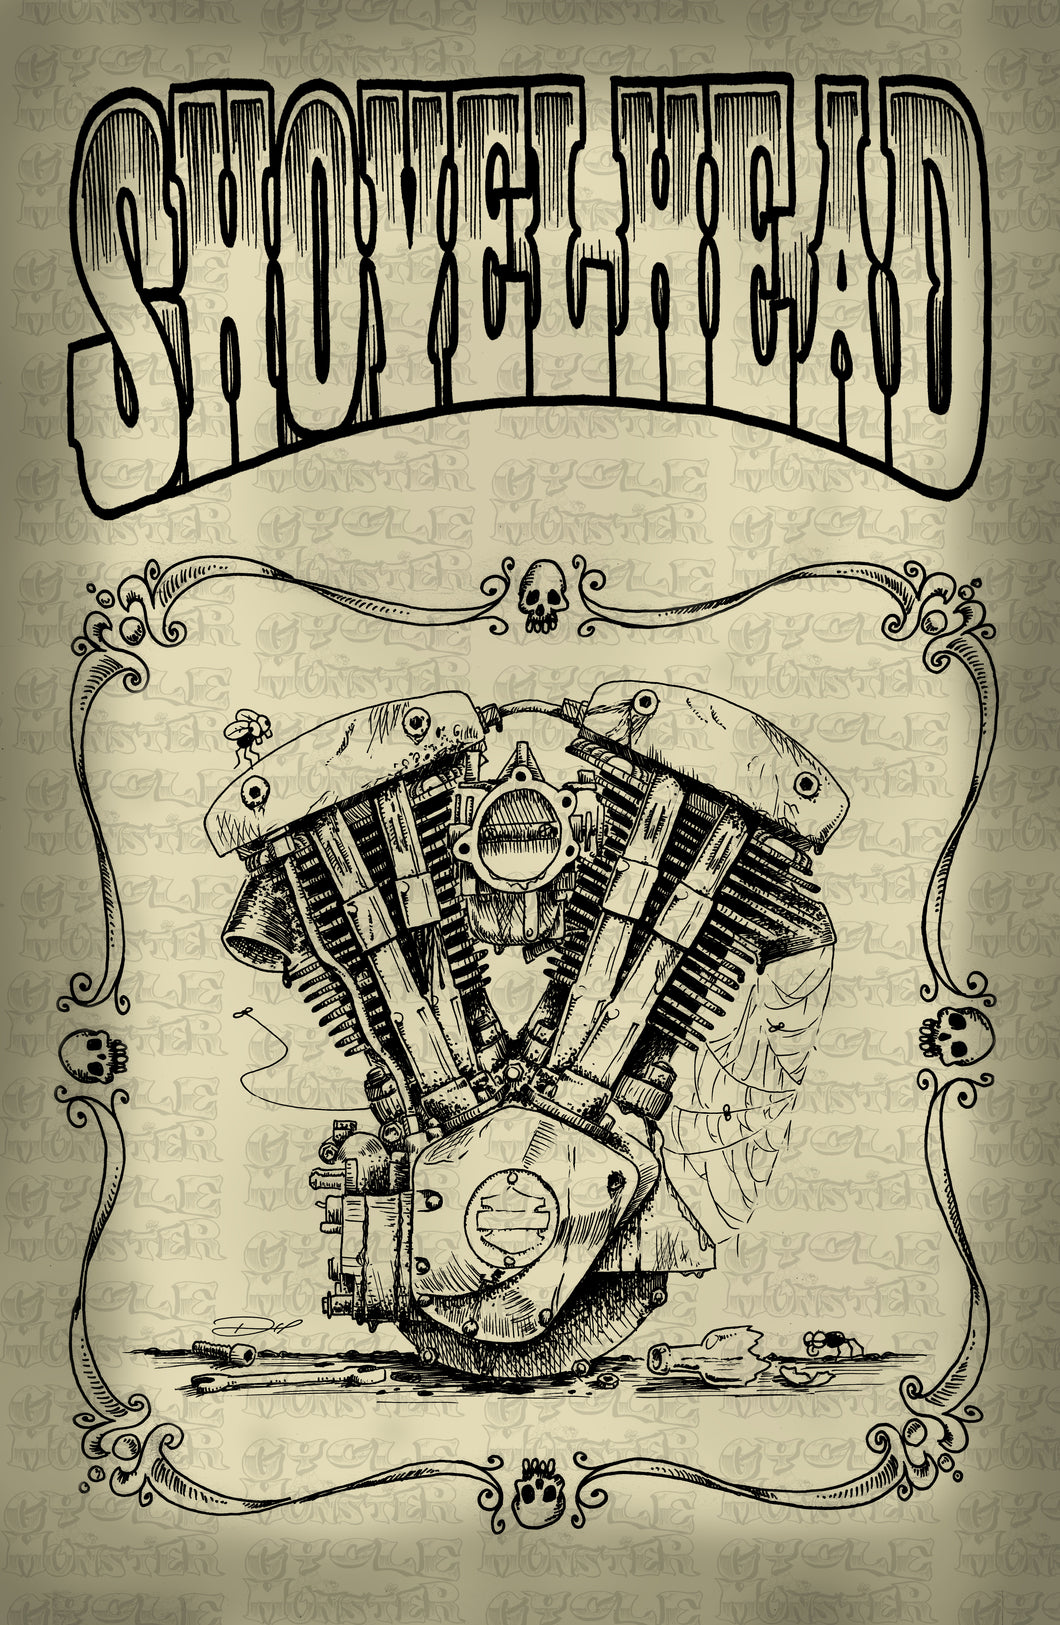 (04 poster) SHOVELHEAD